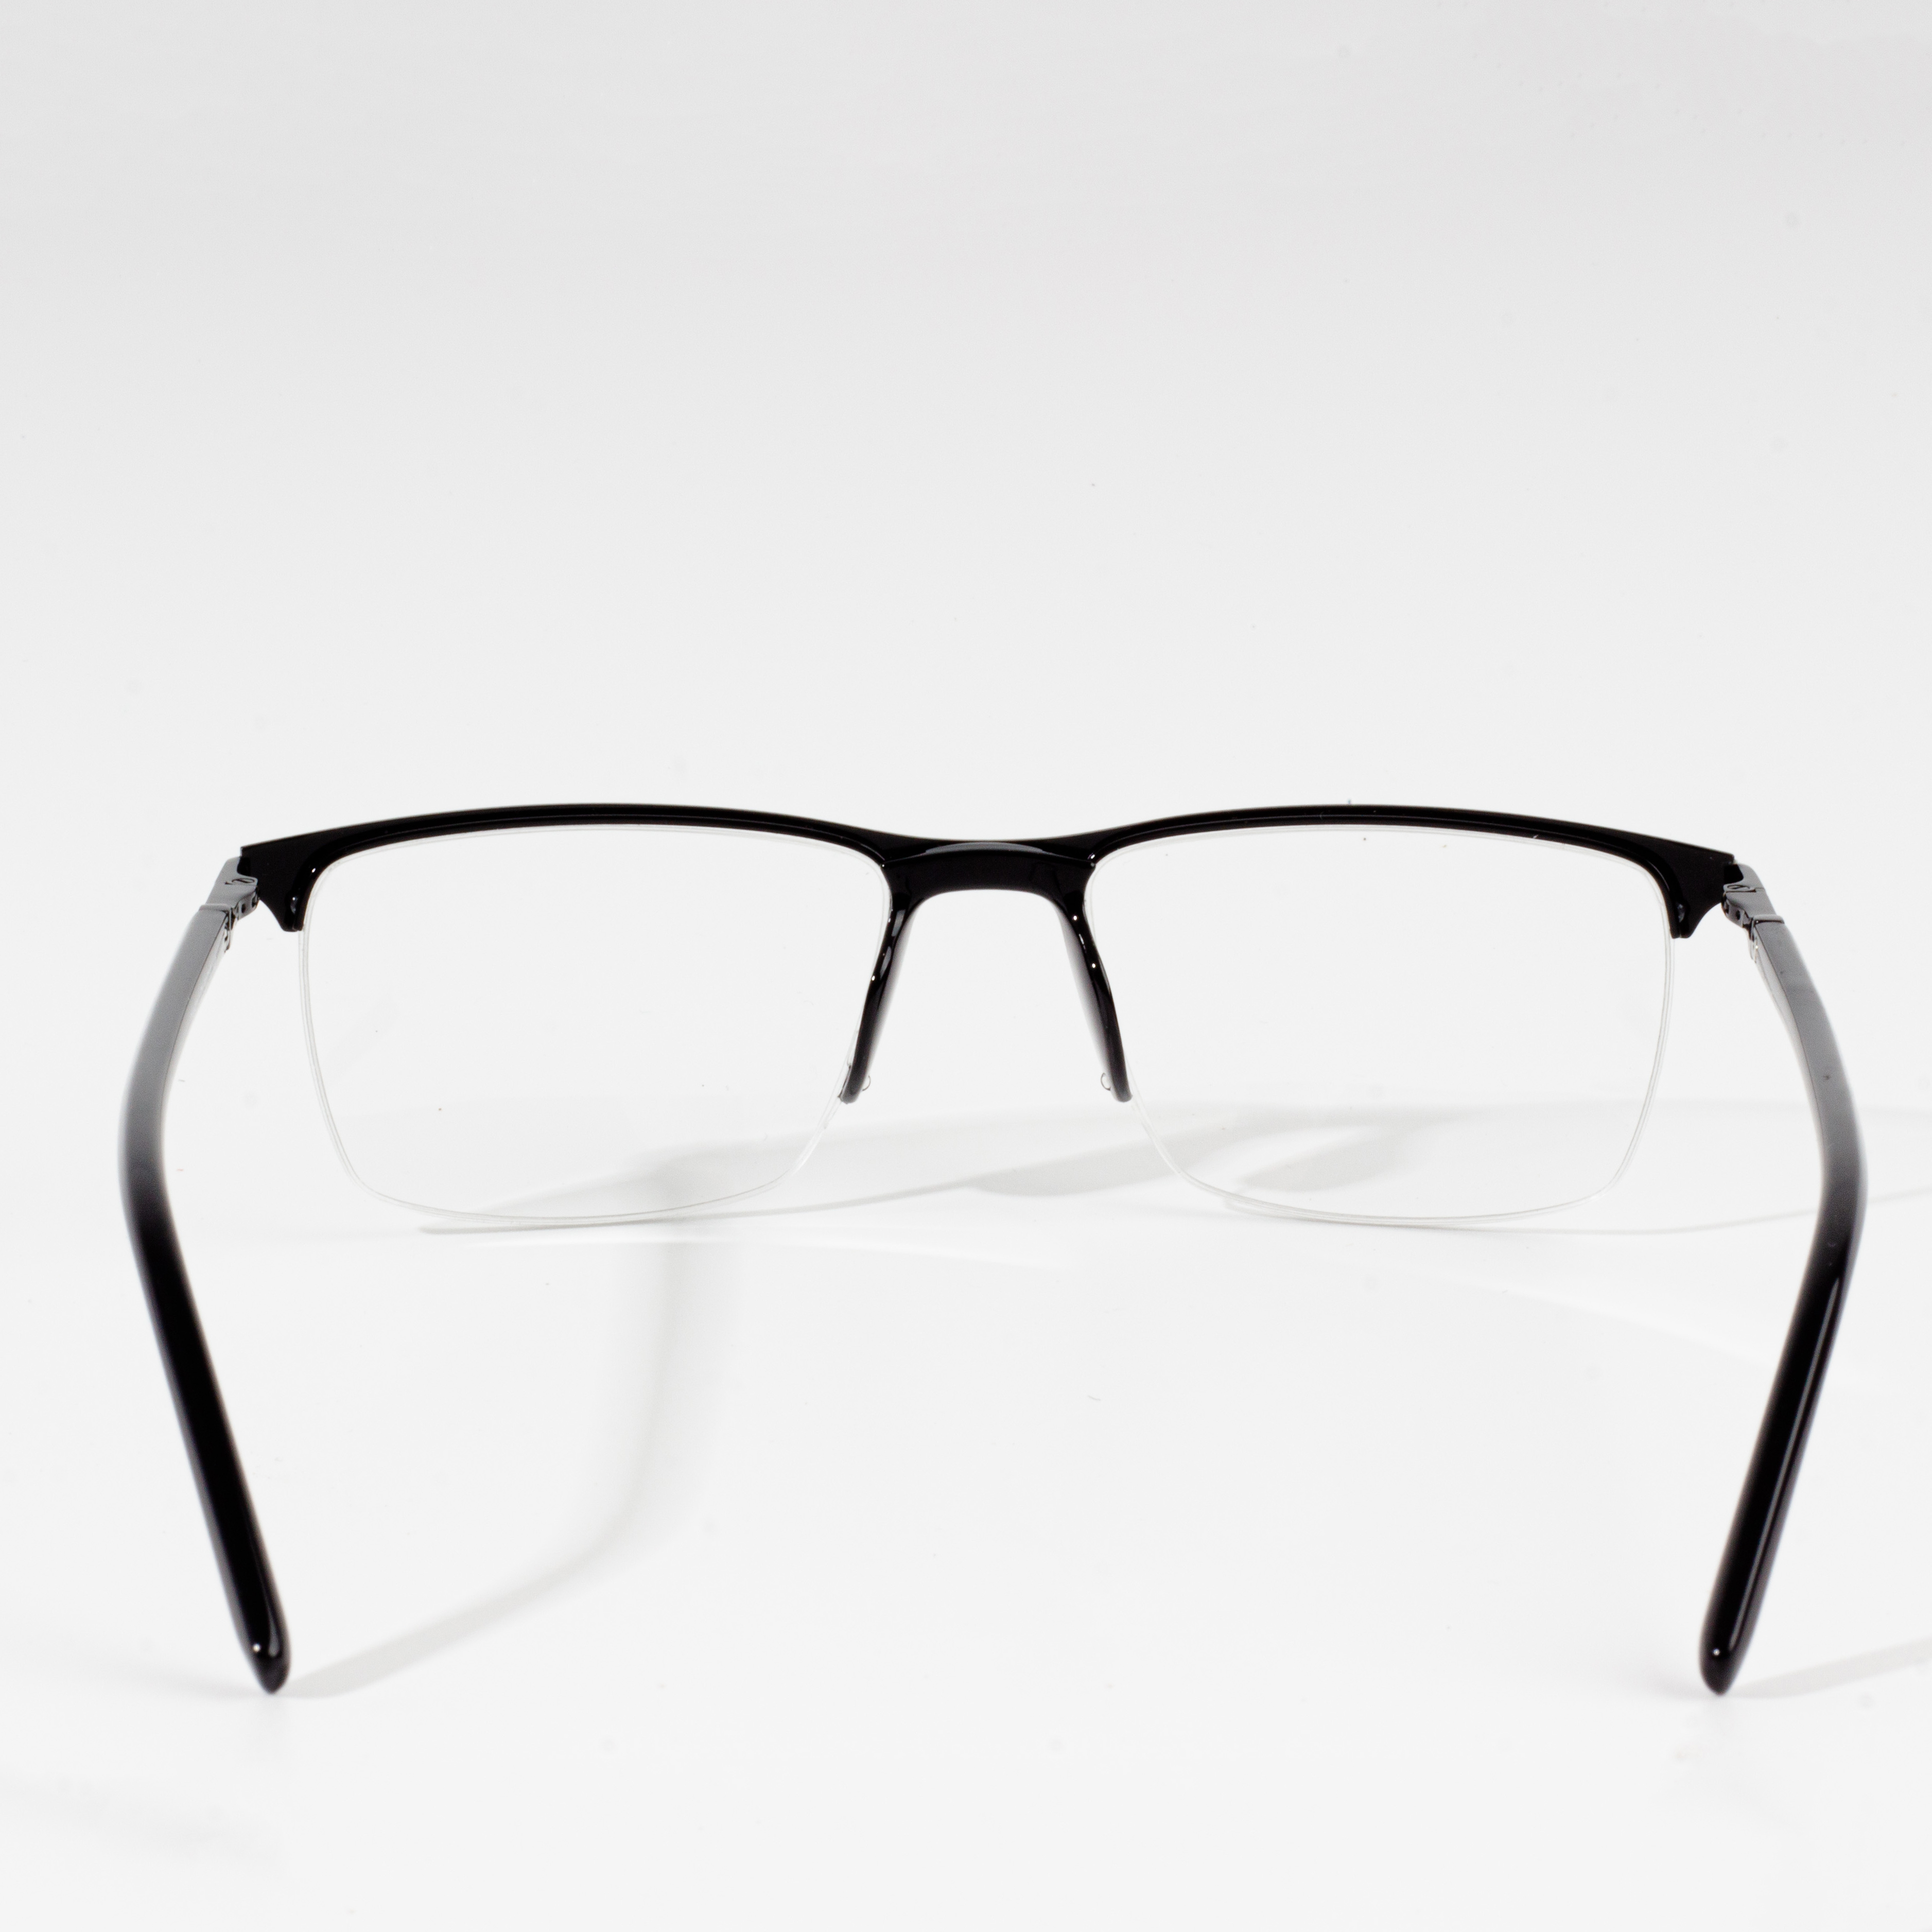 מסגרות למשקפיים אופטיות למשקפיים